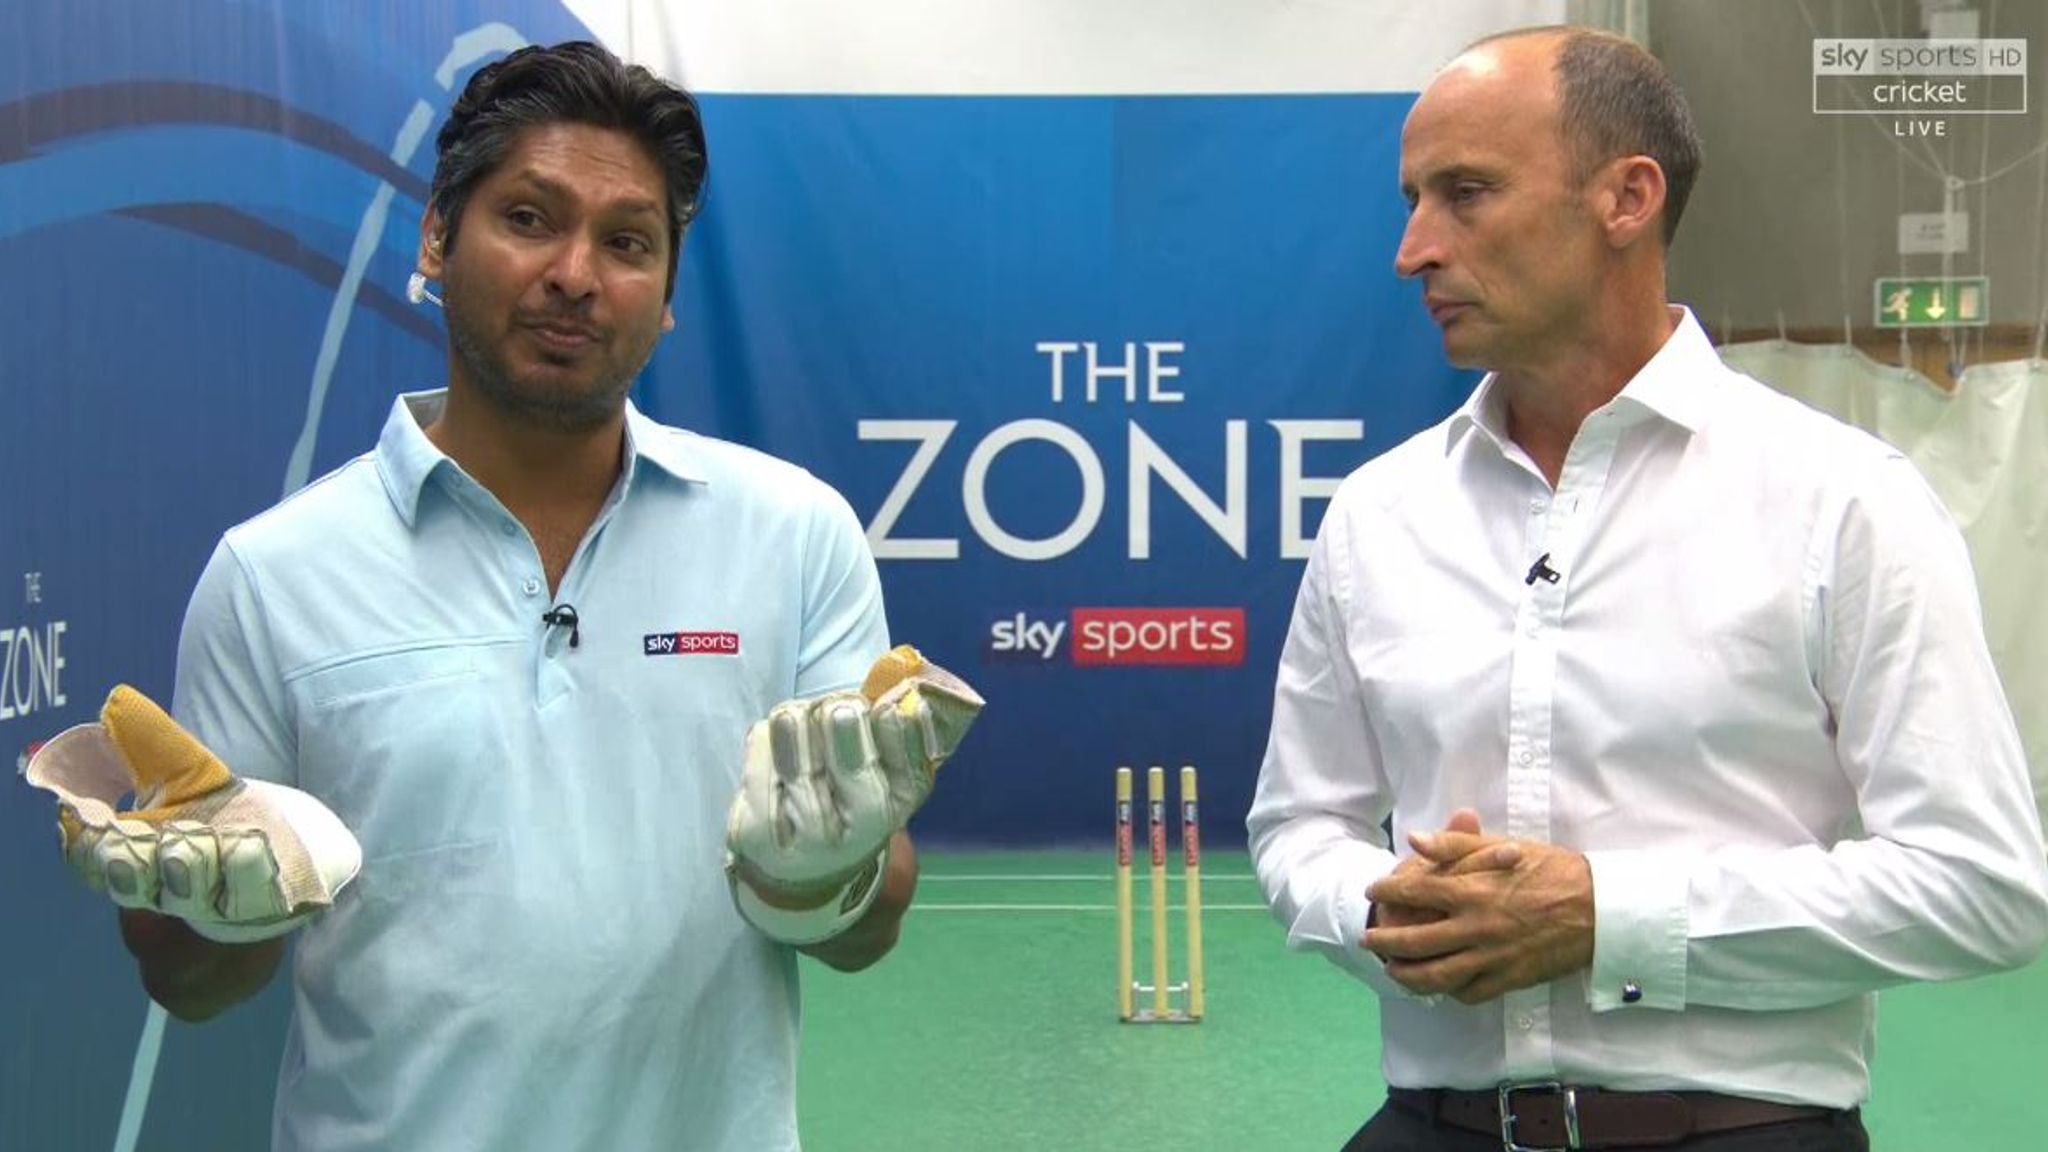 Watch Kumar Sangakkaras wicketkeeping demo in The Zone Cricket News Sky Sports